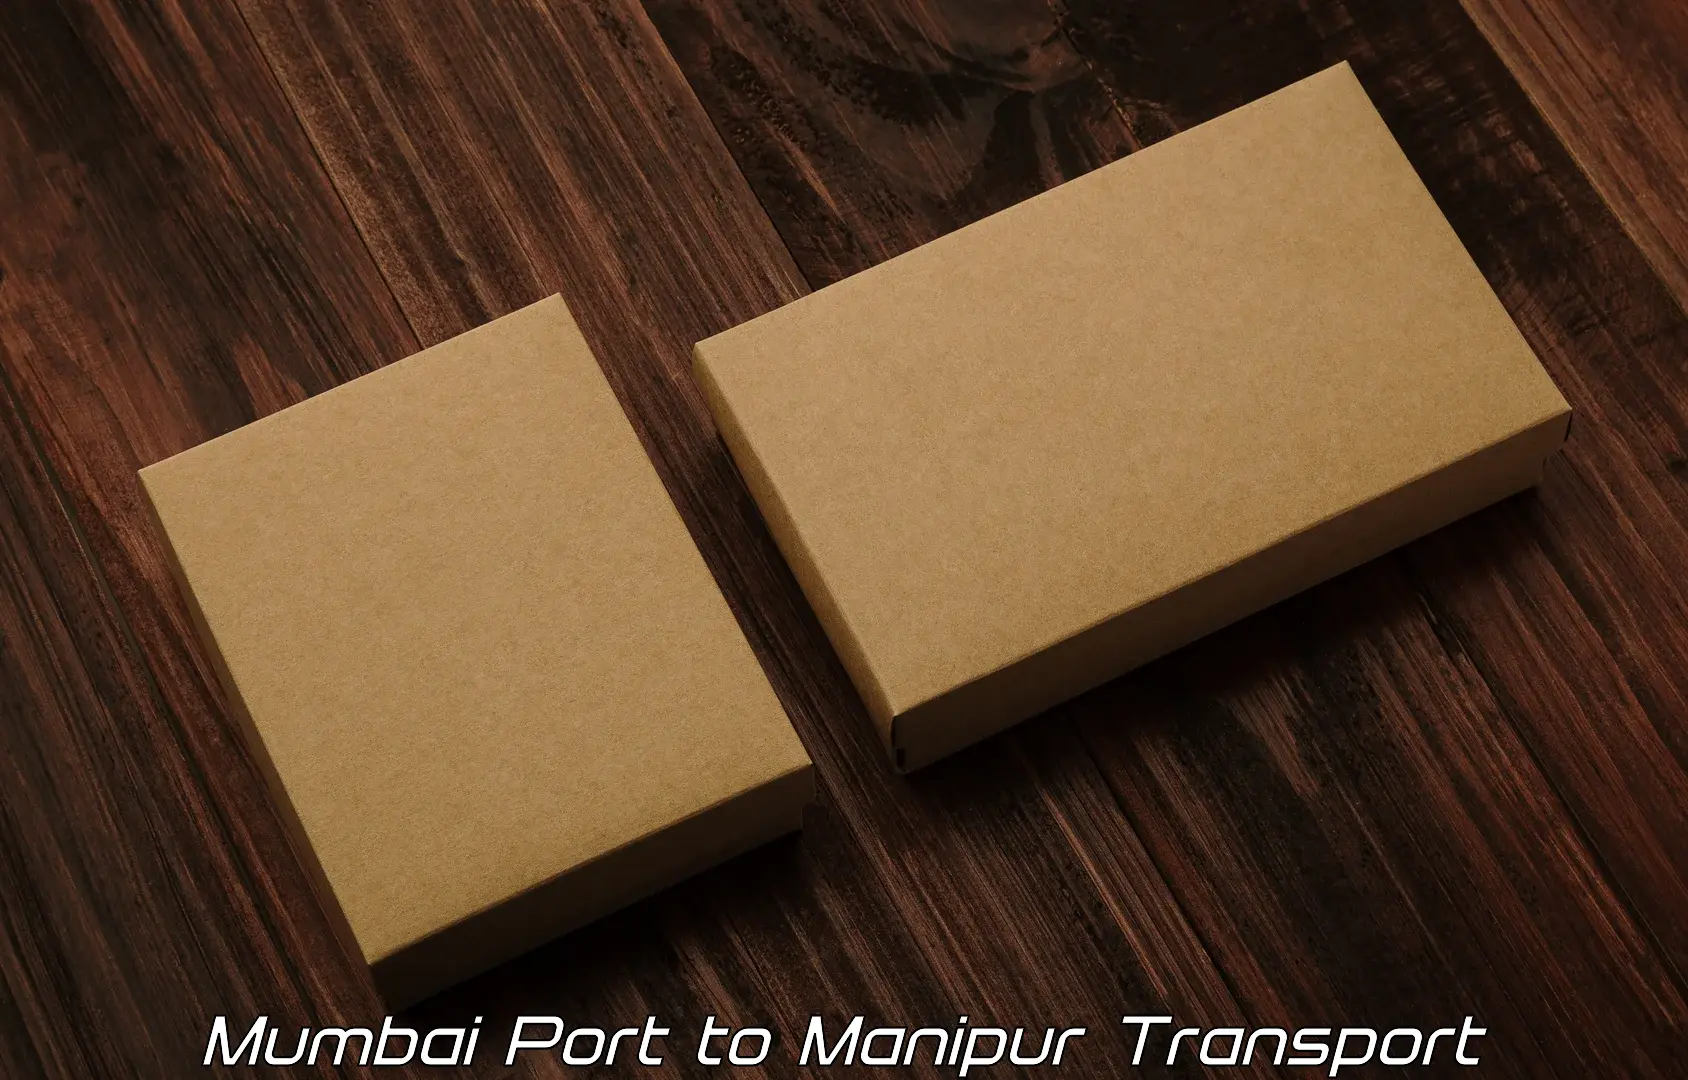 Door to door transport services Mumbai Port to Churachandpur